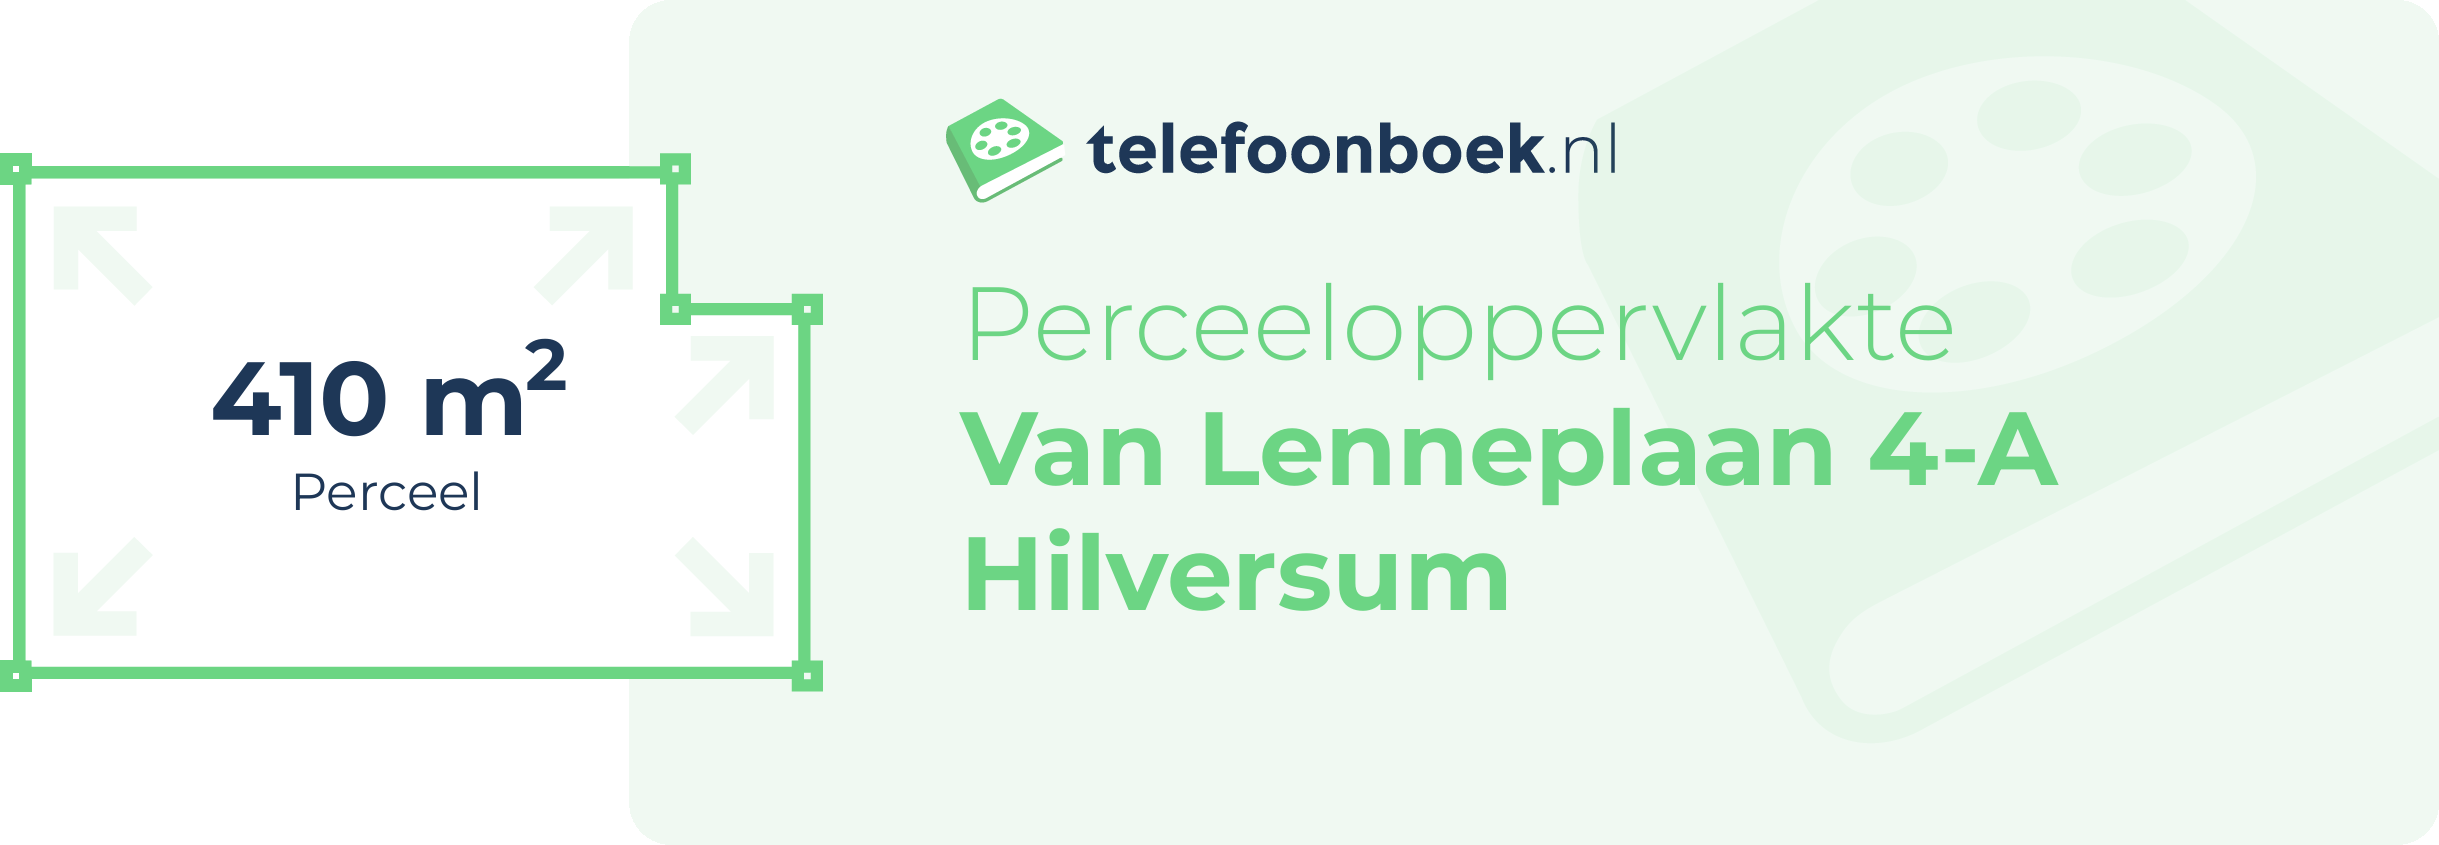 Perceeloppervlakte Van Lenneplaan 4-A Hilversum